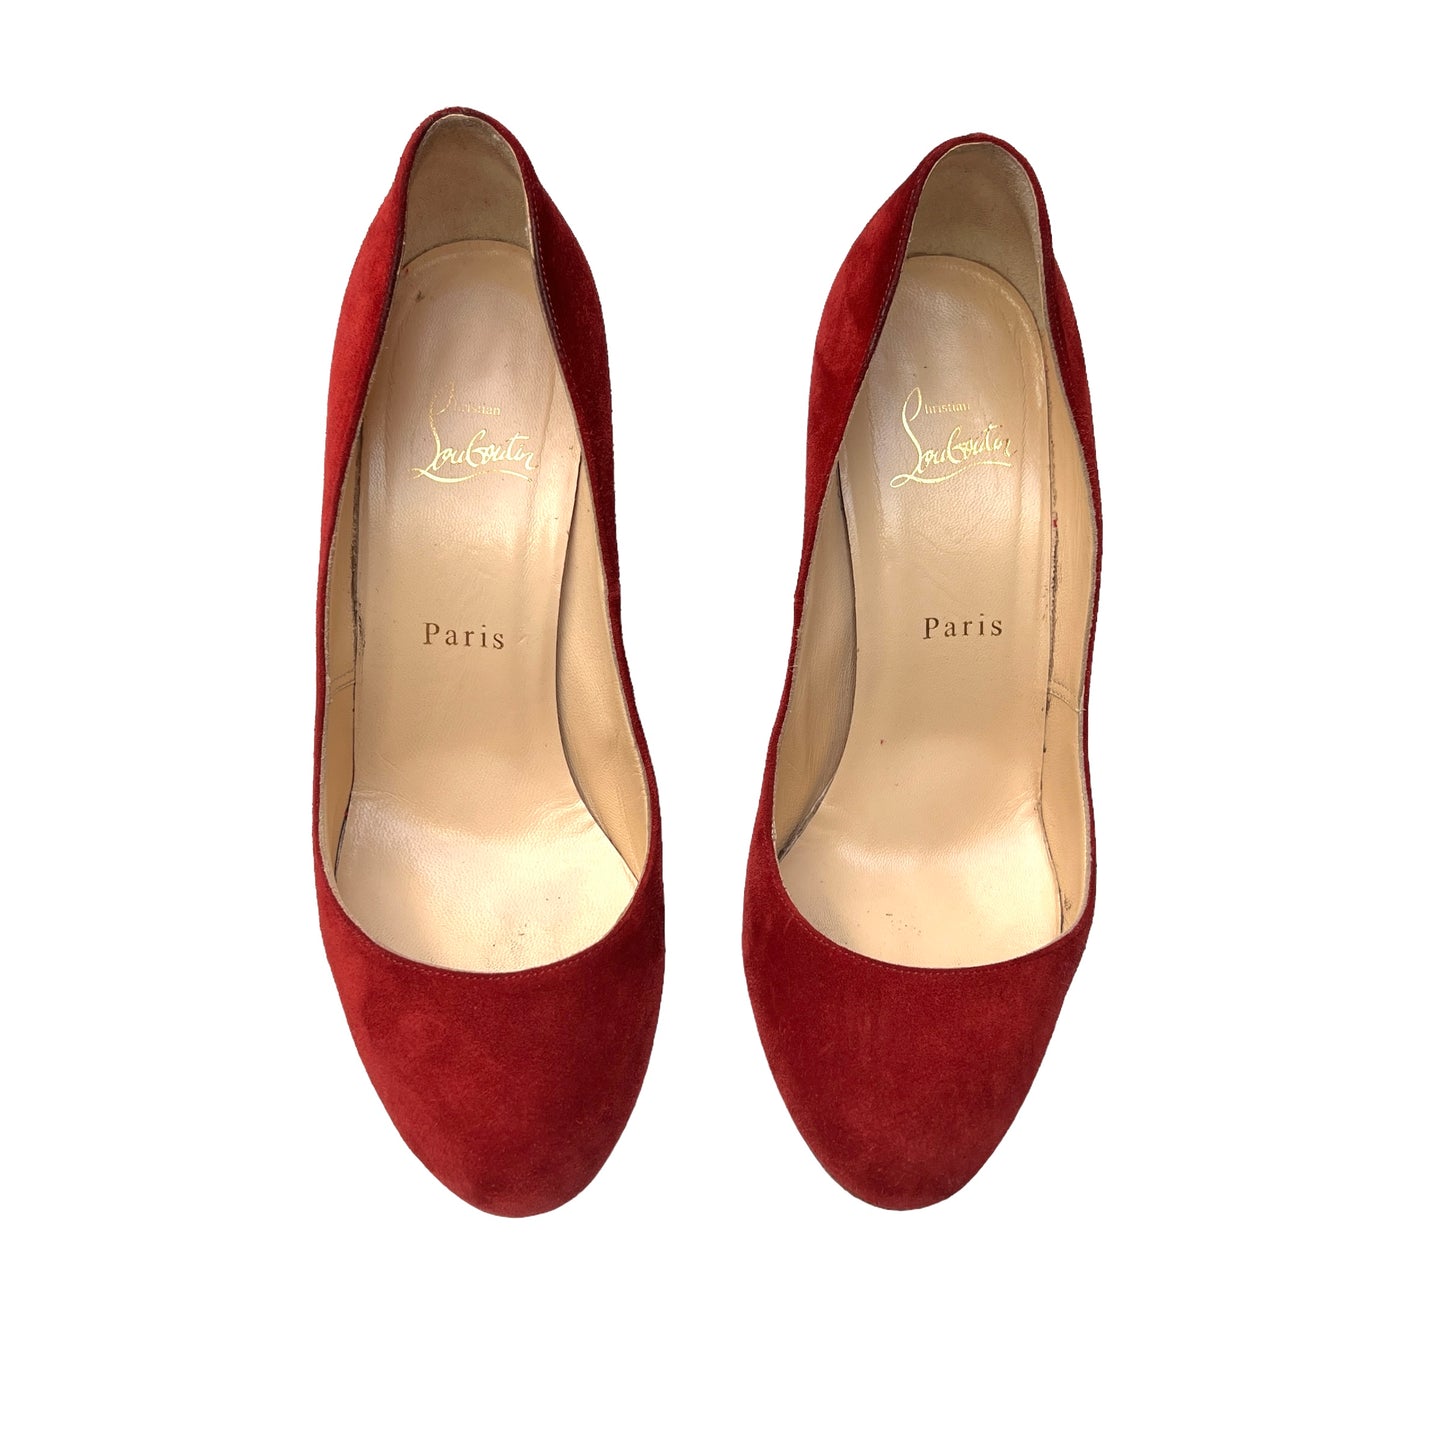 Red Suede Heels - 8.5